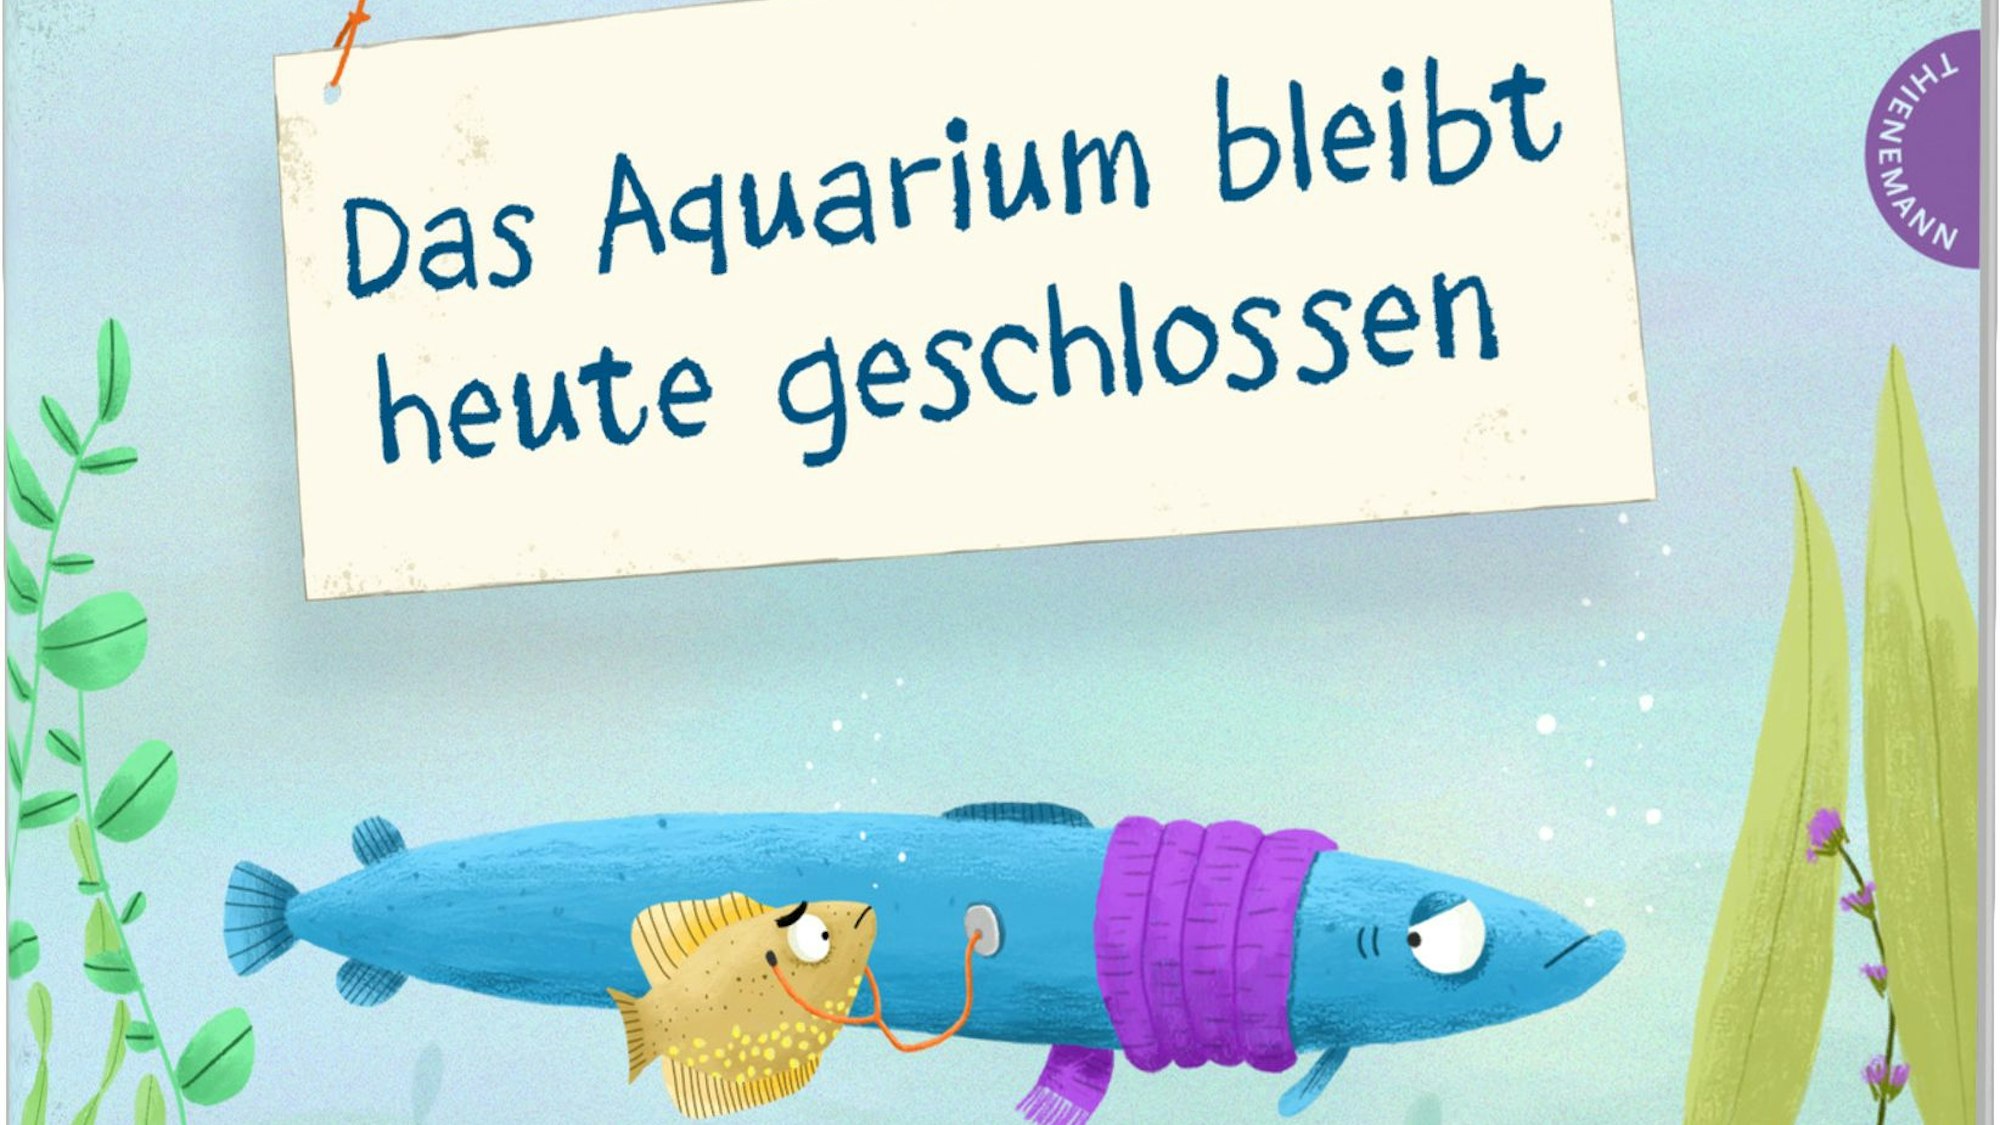 Das Aquarium bleibt heute geschlossen